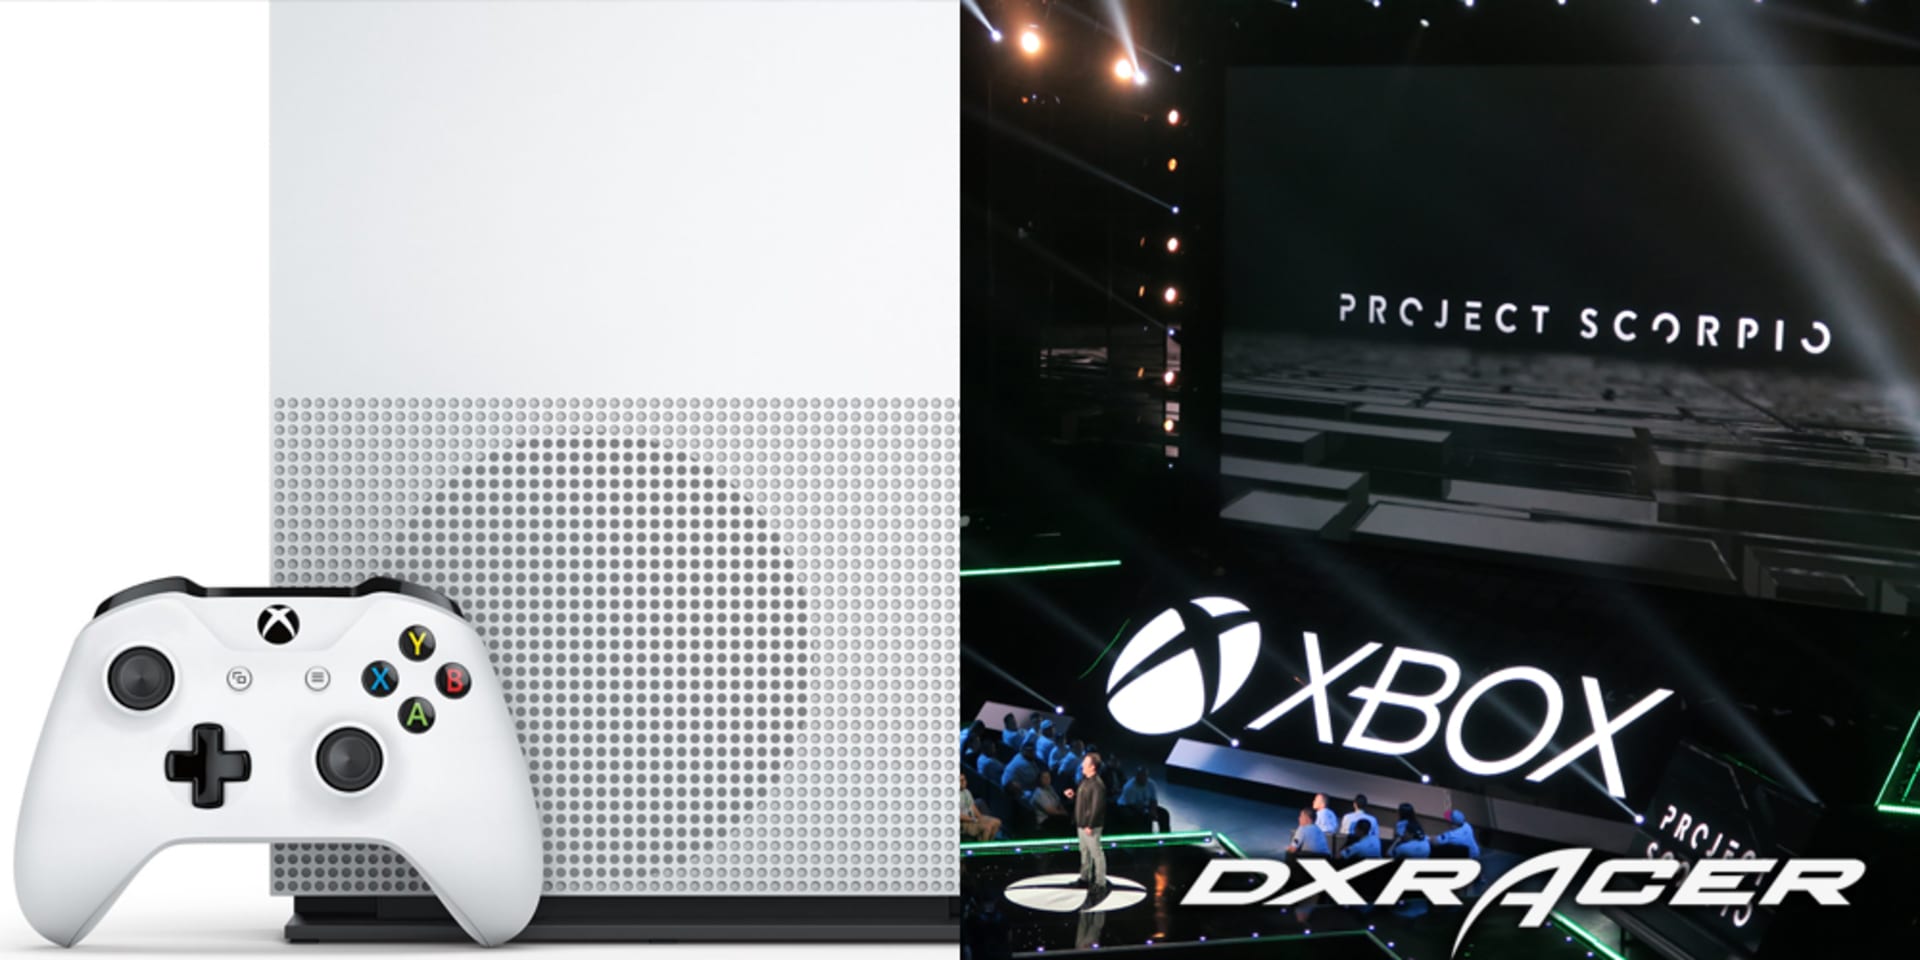 Xbox One S a Project Scorpio